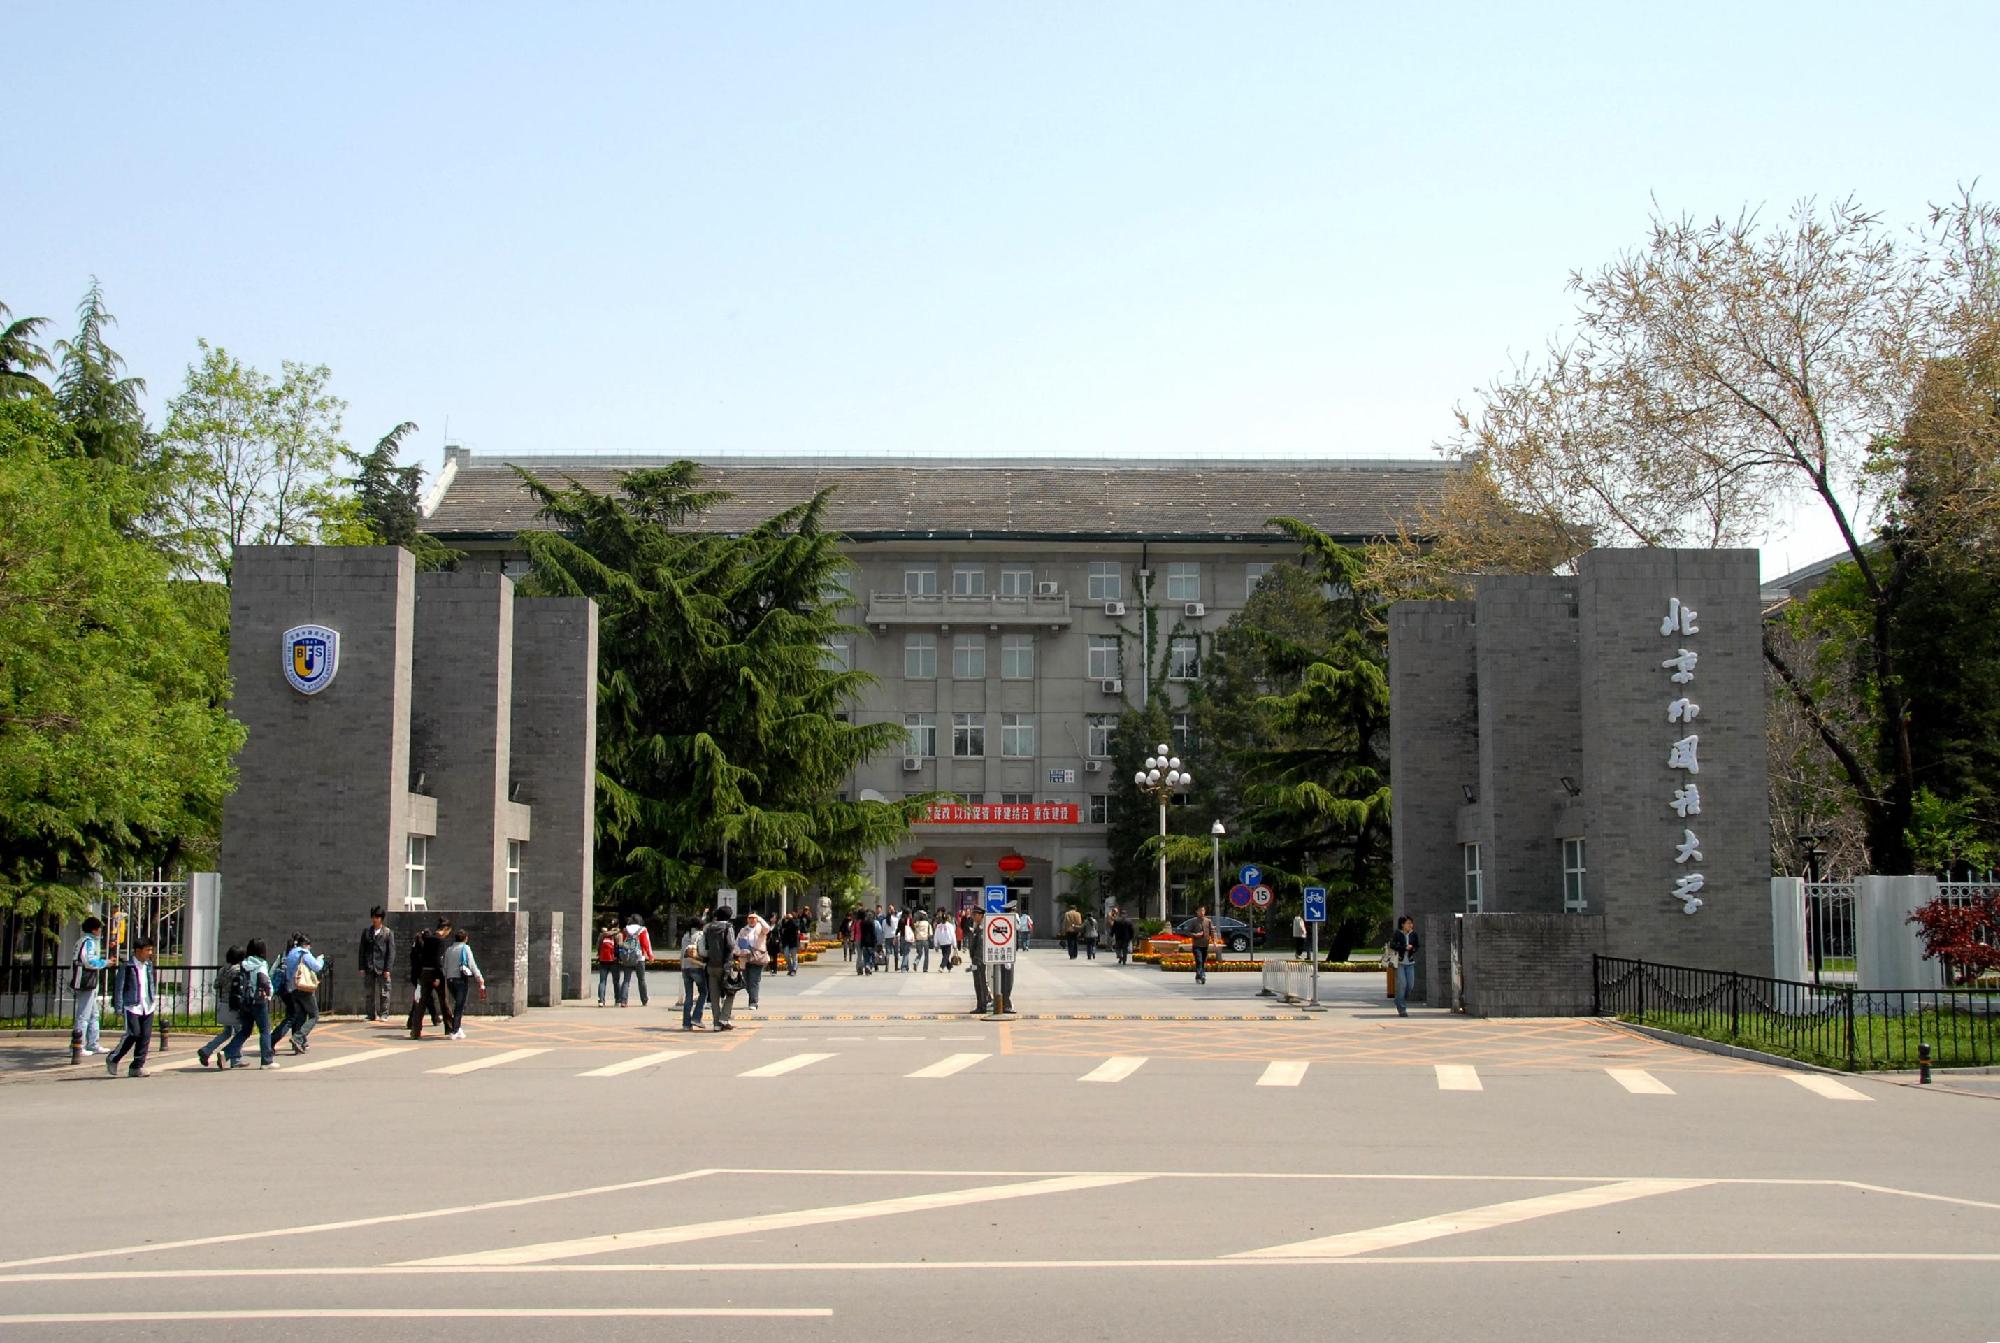 北京外国语大学国际商学院